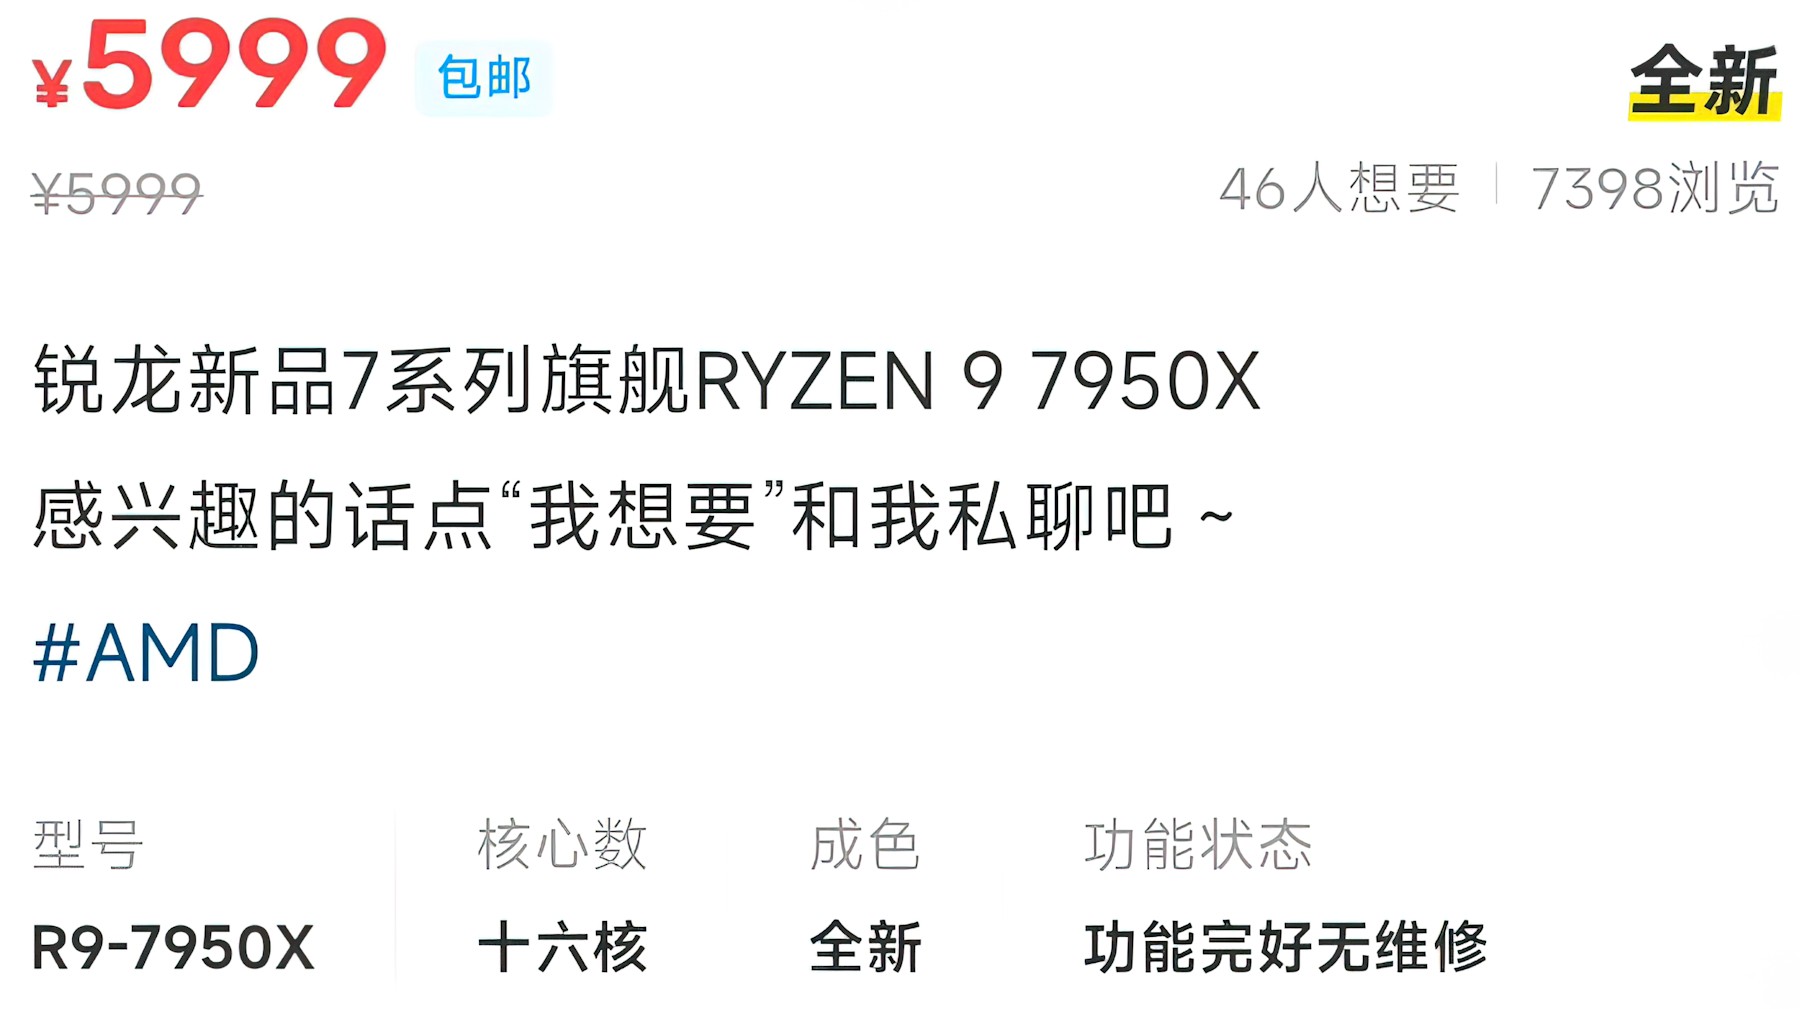 Procesory AMD Ryzen 9 7950X trafiły na czarny rynek